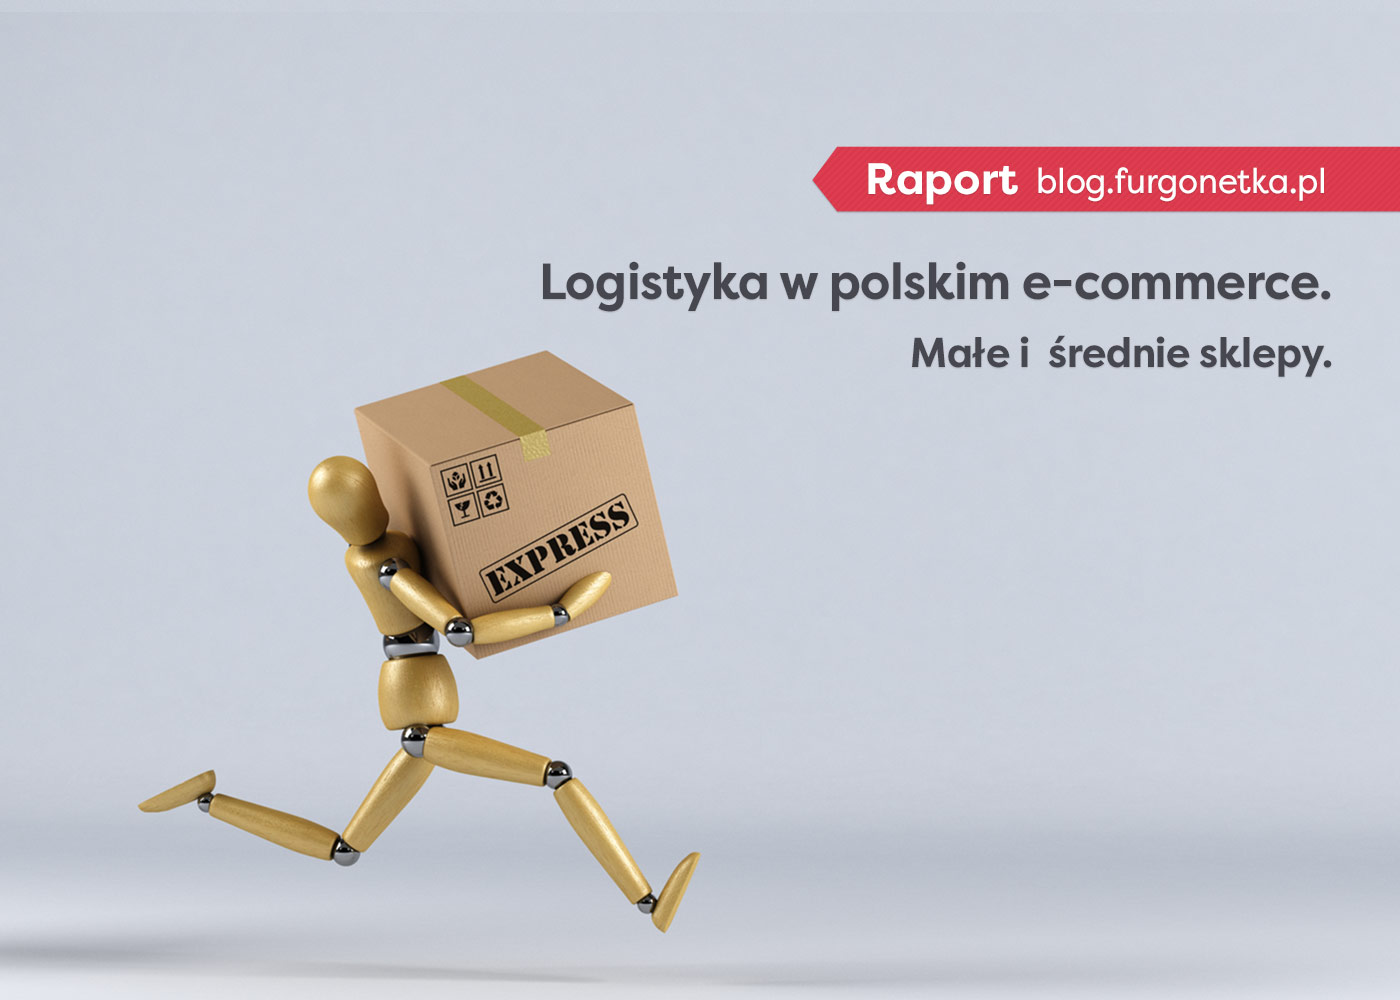 Raport: dostawa w małych i średnich sklepach online w Polsce